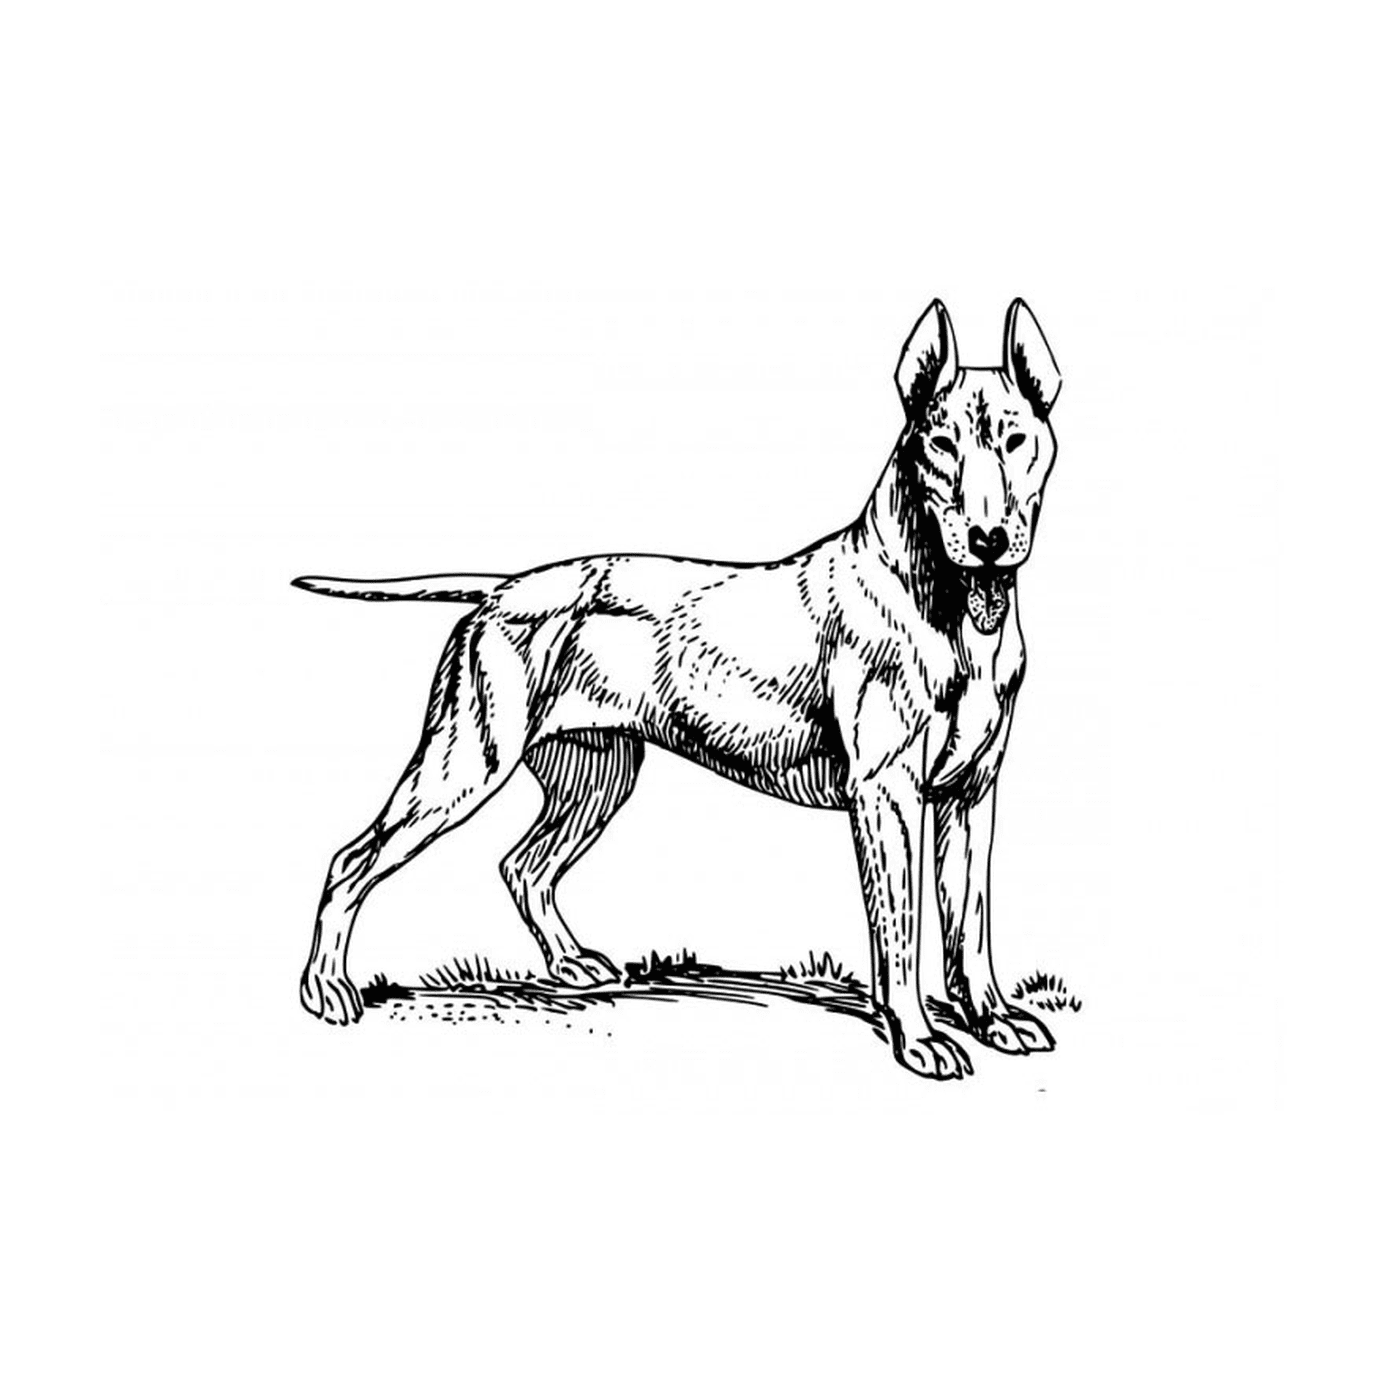  Собака, стоящая на поле 